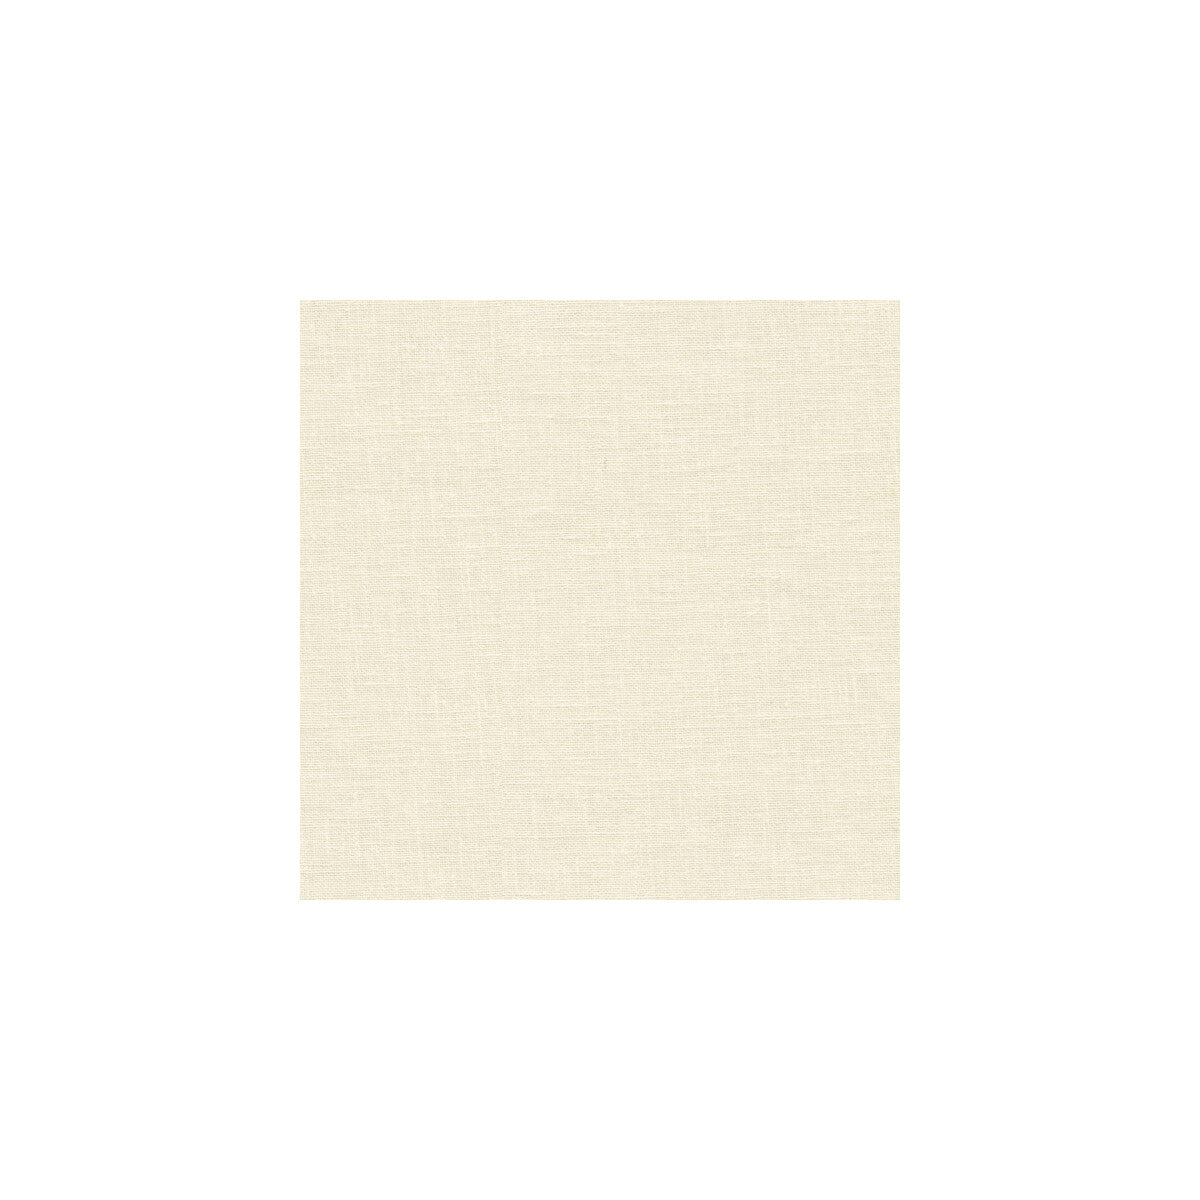 Kravet Basics fabric in 3783-1 color - pattern 3783.1.0 - by Kravet Basics